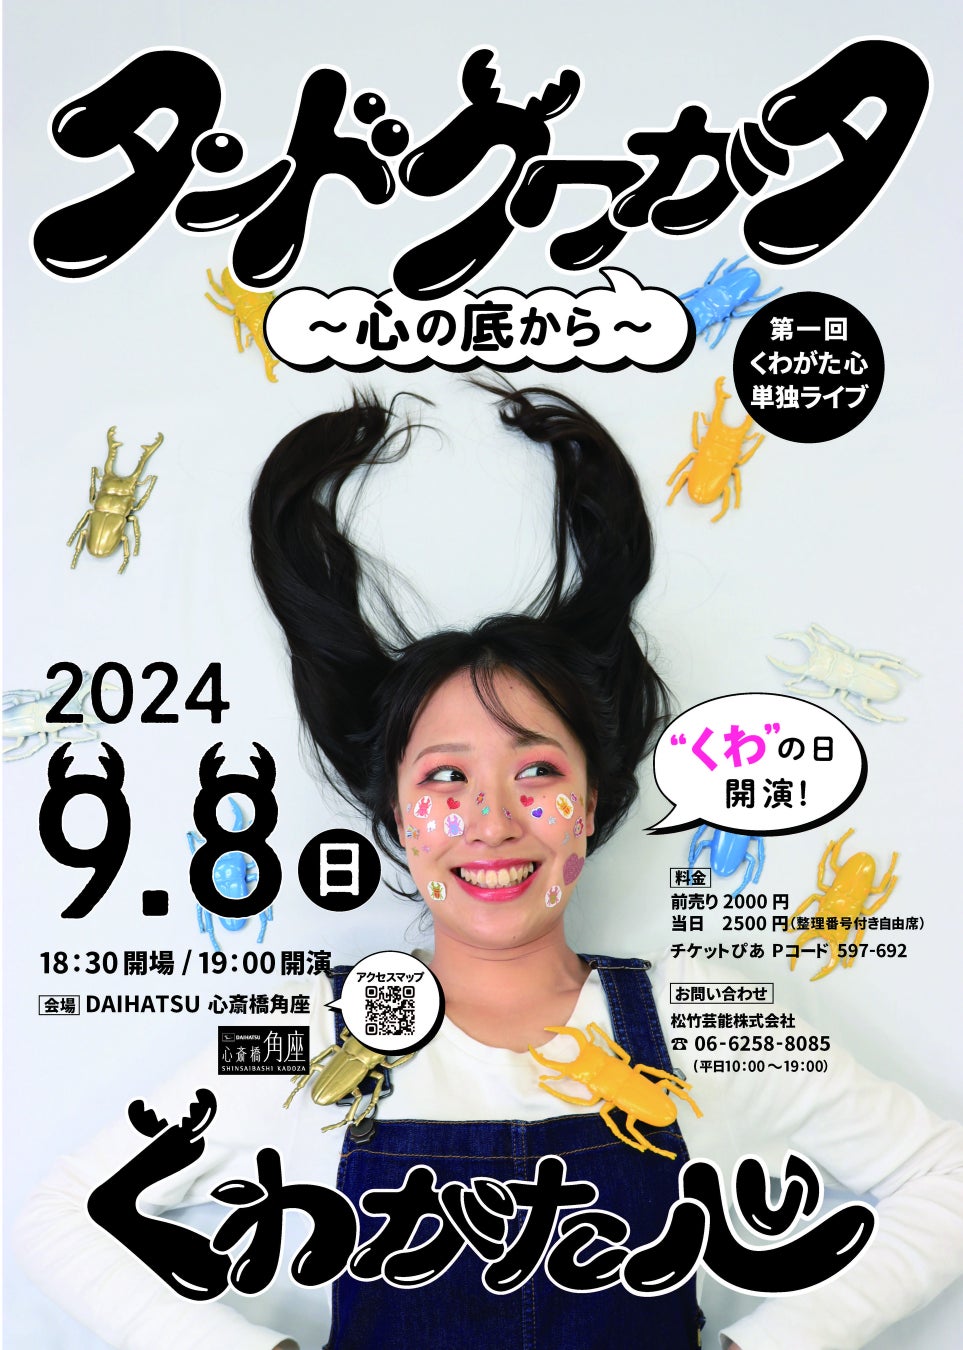 宮崎県延岡市で開催する映像クリエイター向けのレジデンスプログラム「Connect & Create NOBEOKA 2024」の公募を開始。